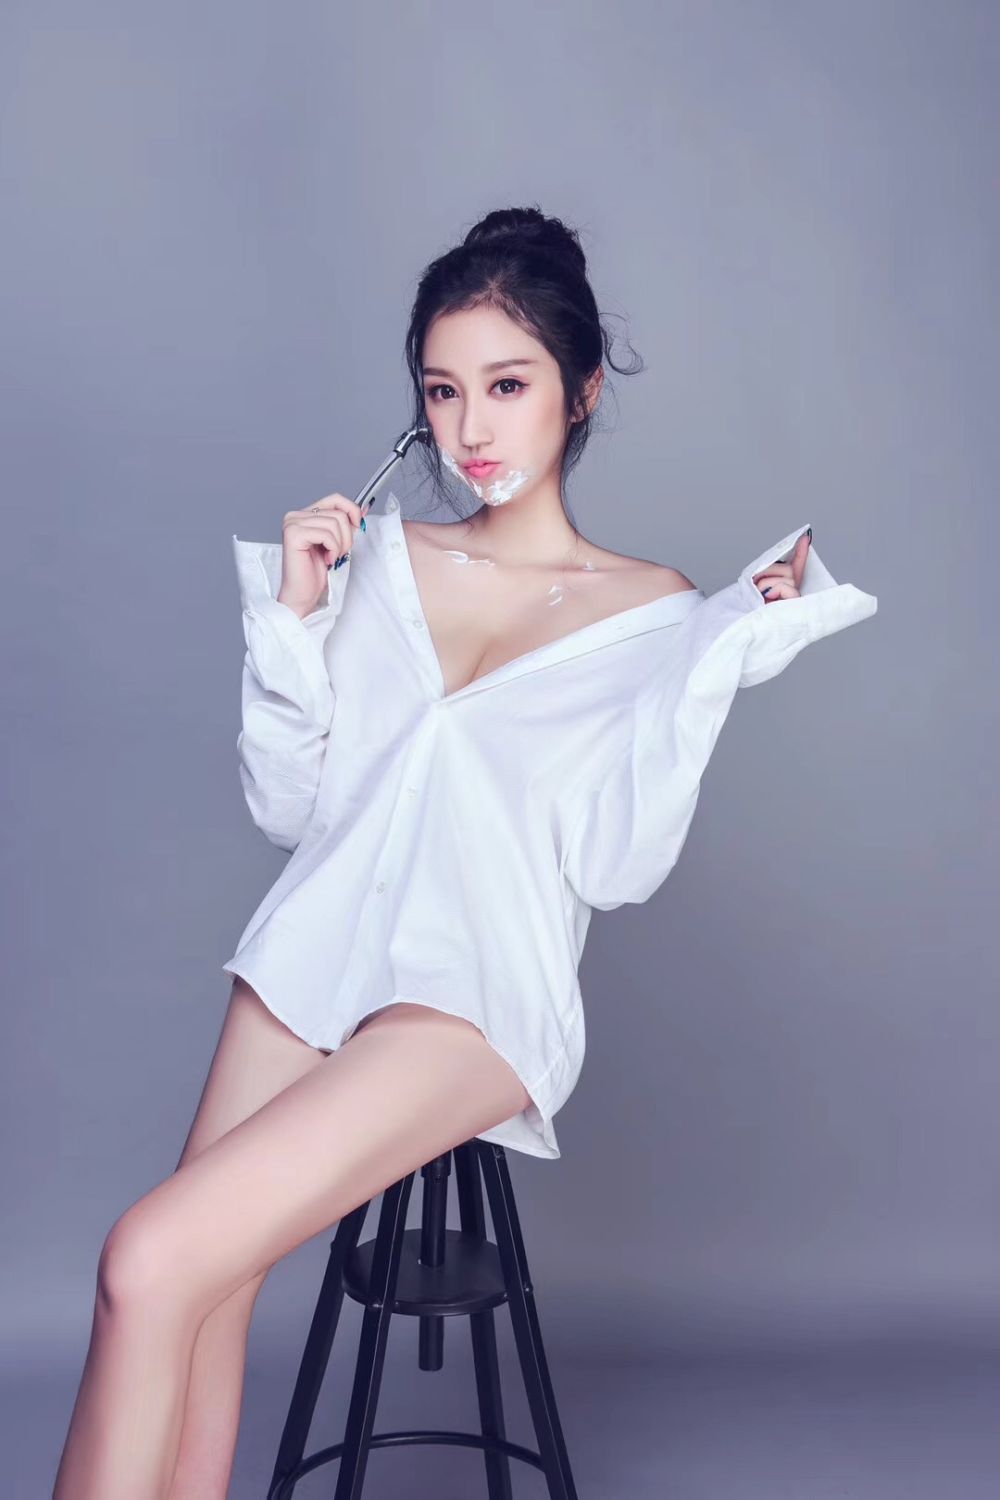 王子运 Sexy and Hottest Photos , Latest Pics